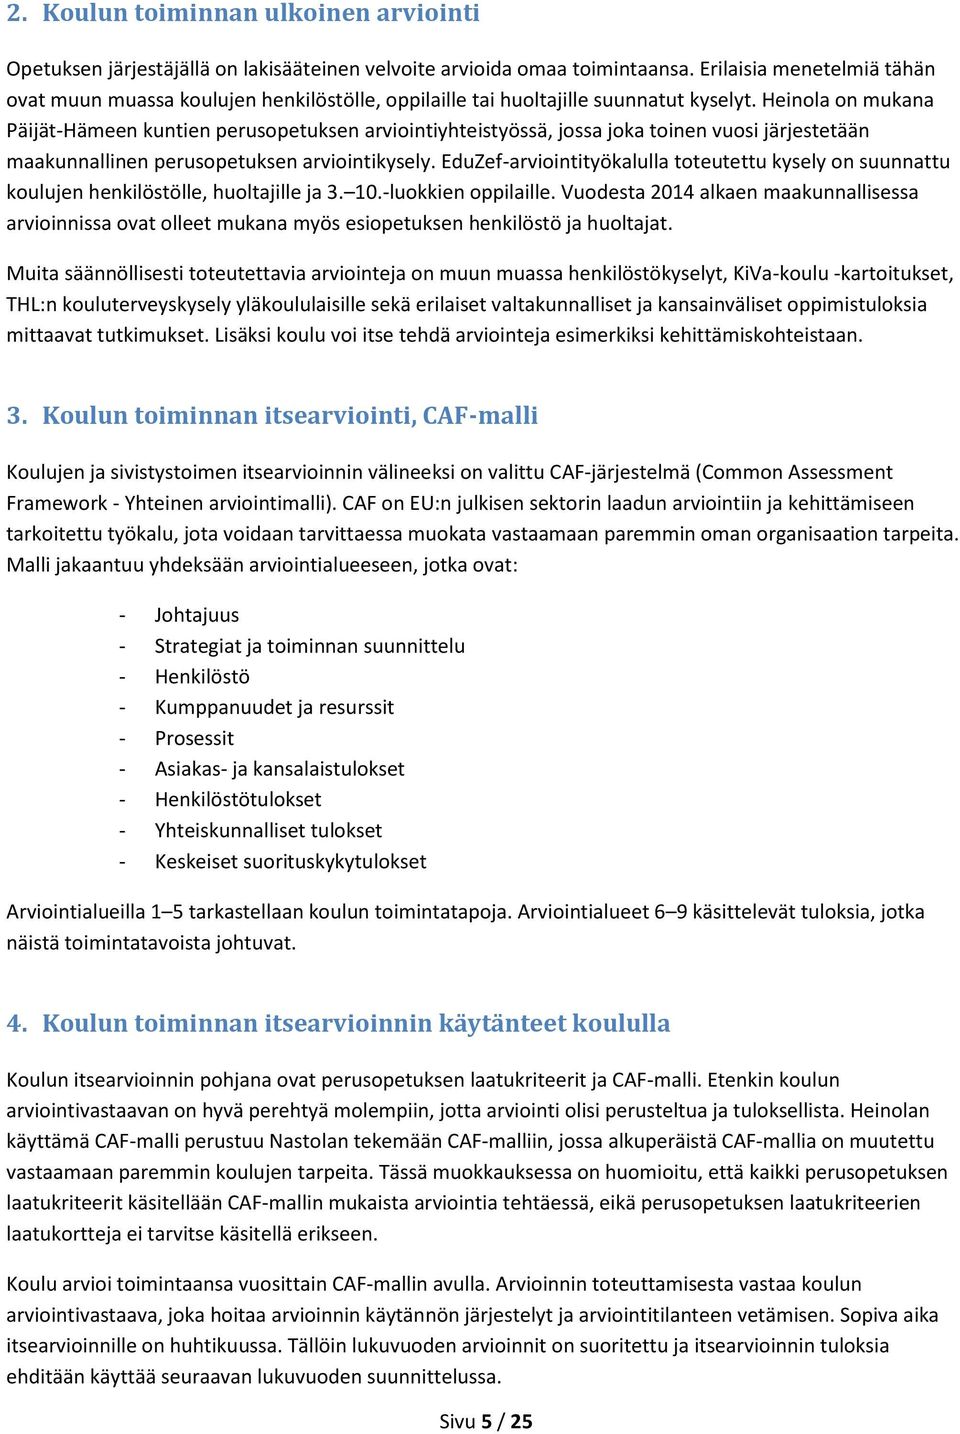 Heinola on mukana Päijät-Hämeen kuntien perusopetuksen arviointiyhteistyössä, jossa joka toinen vuosi järjestetään maakunnallinen perusopetuksen arviointikysely.